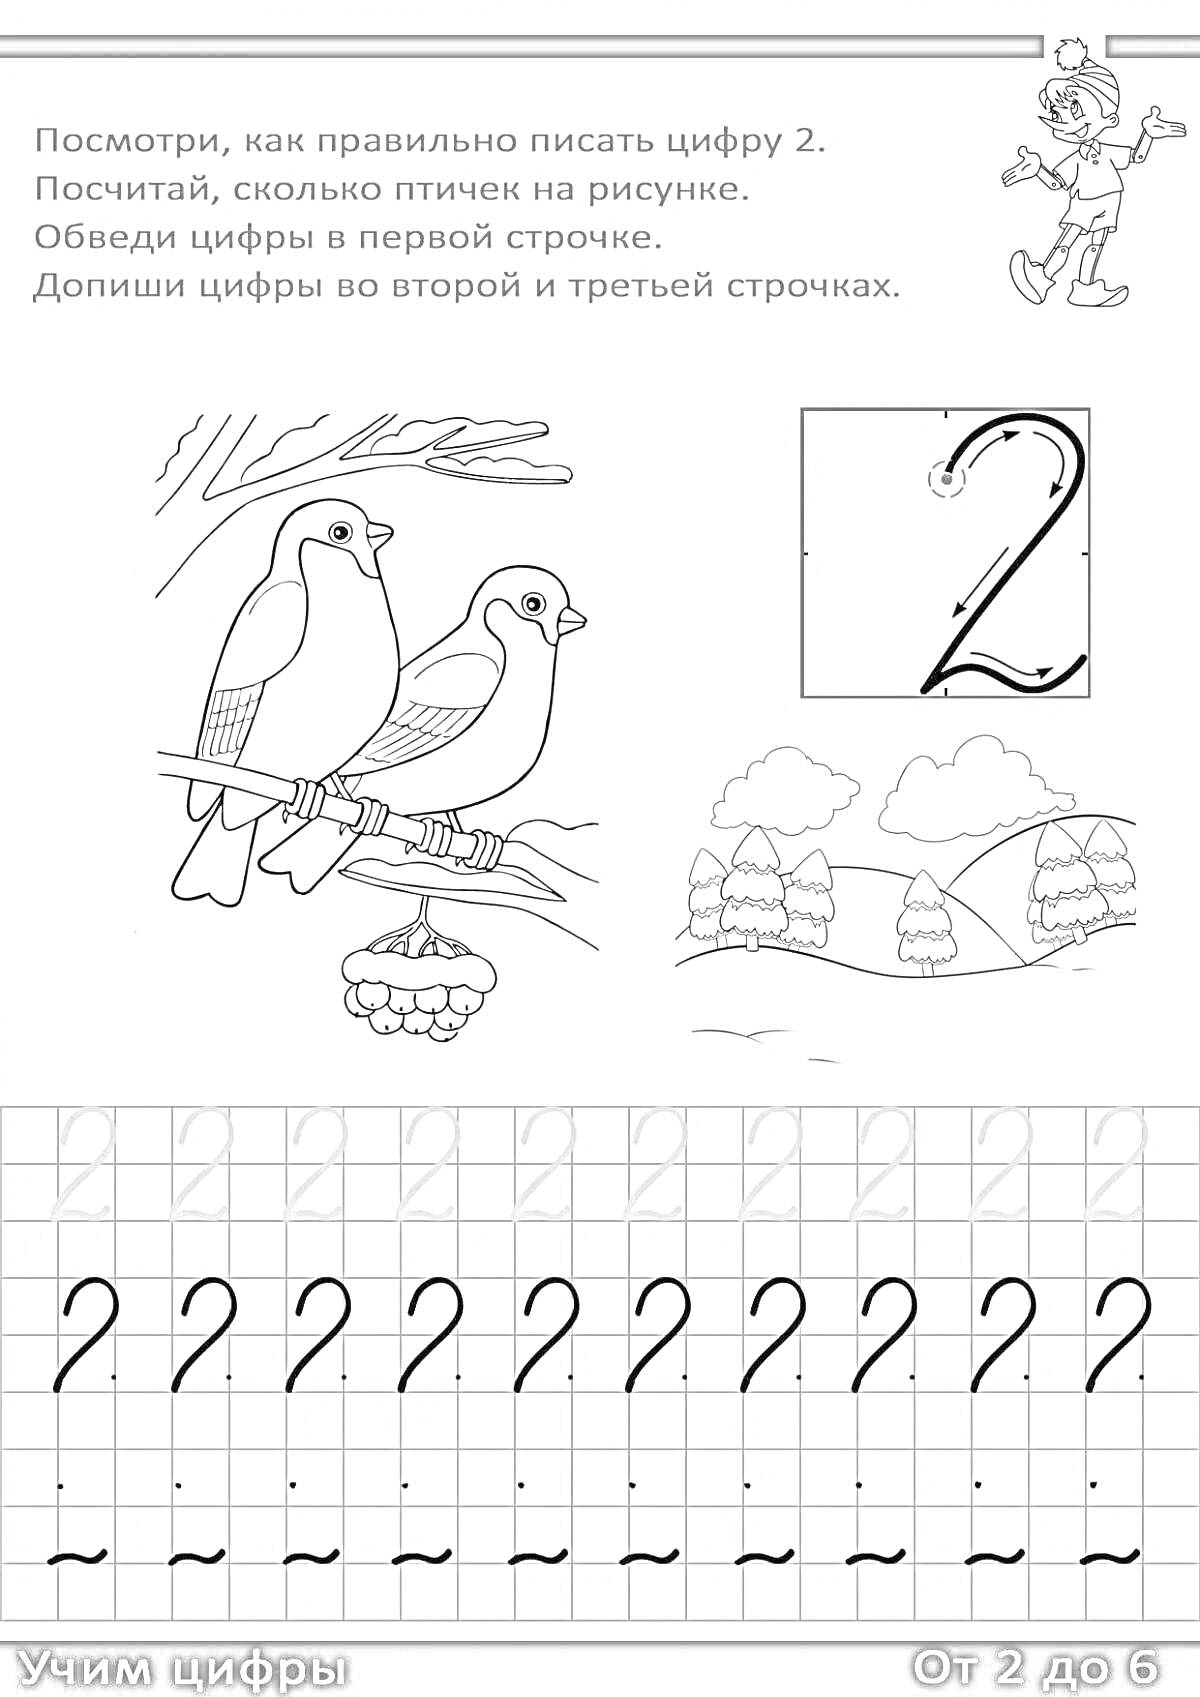 Раскраска как правильно писать цифру 2. Птицы на ветке, цифра 2, деревья на фоне, контурные цифры для обведения